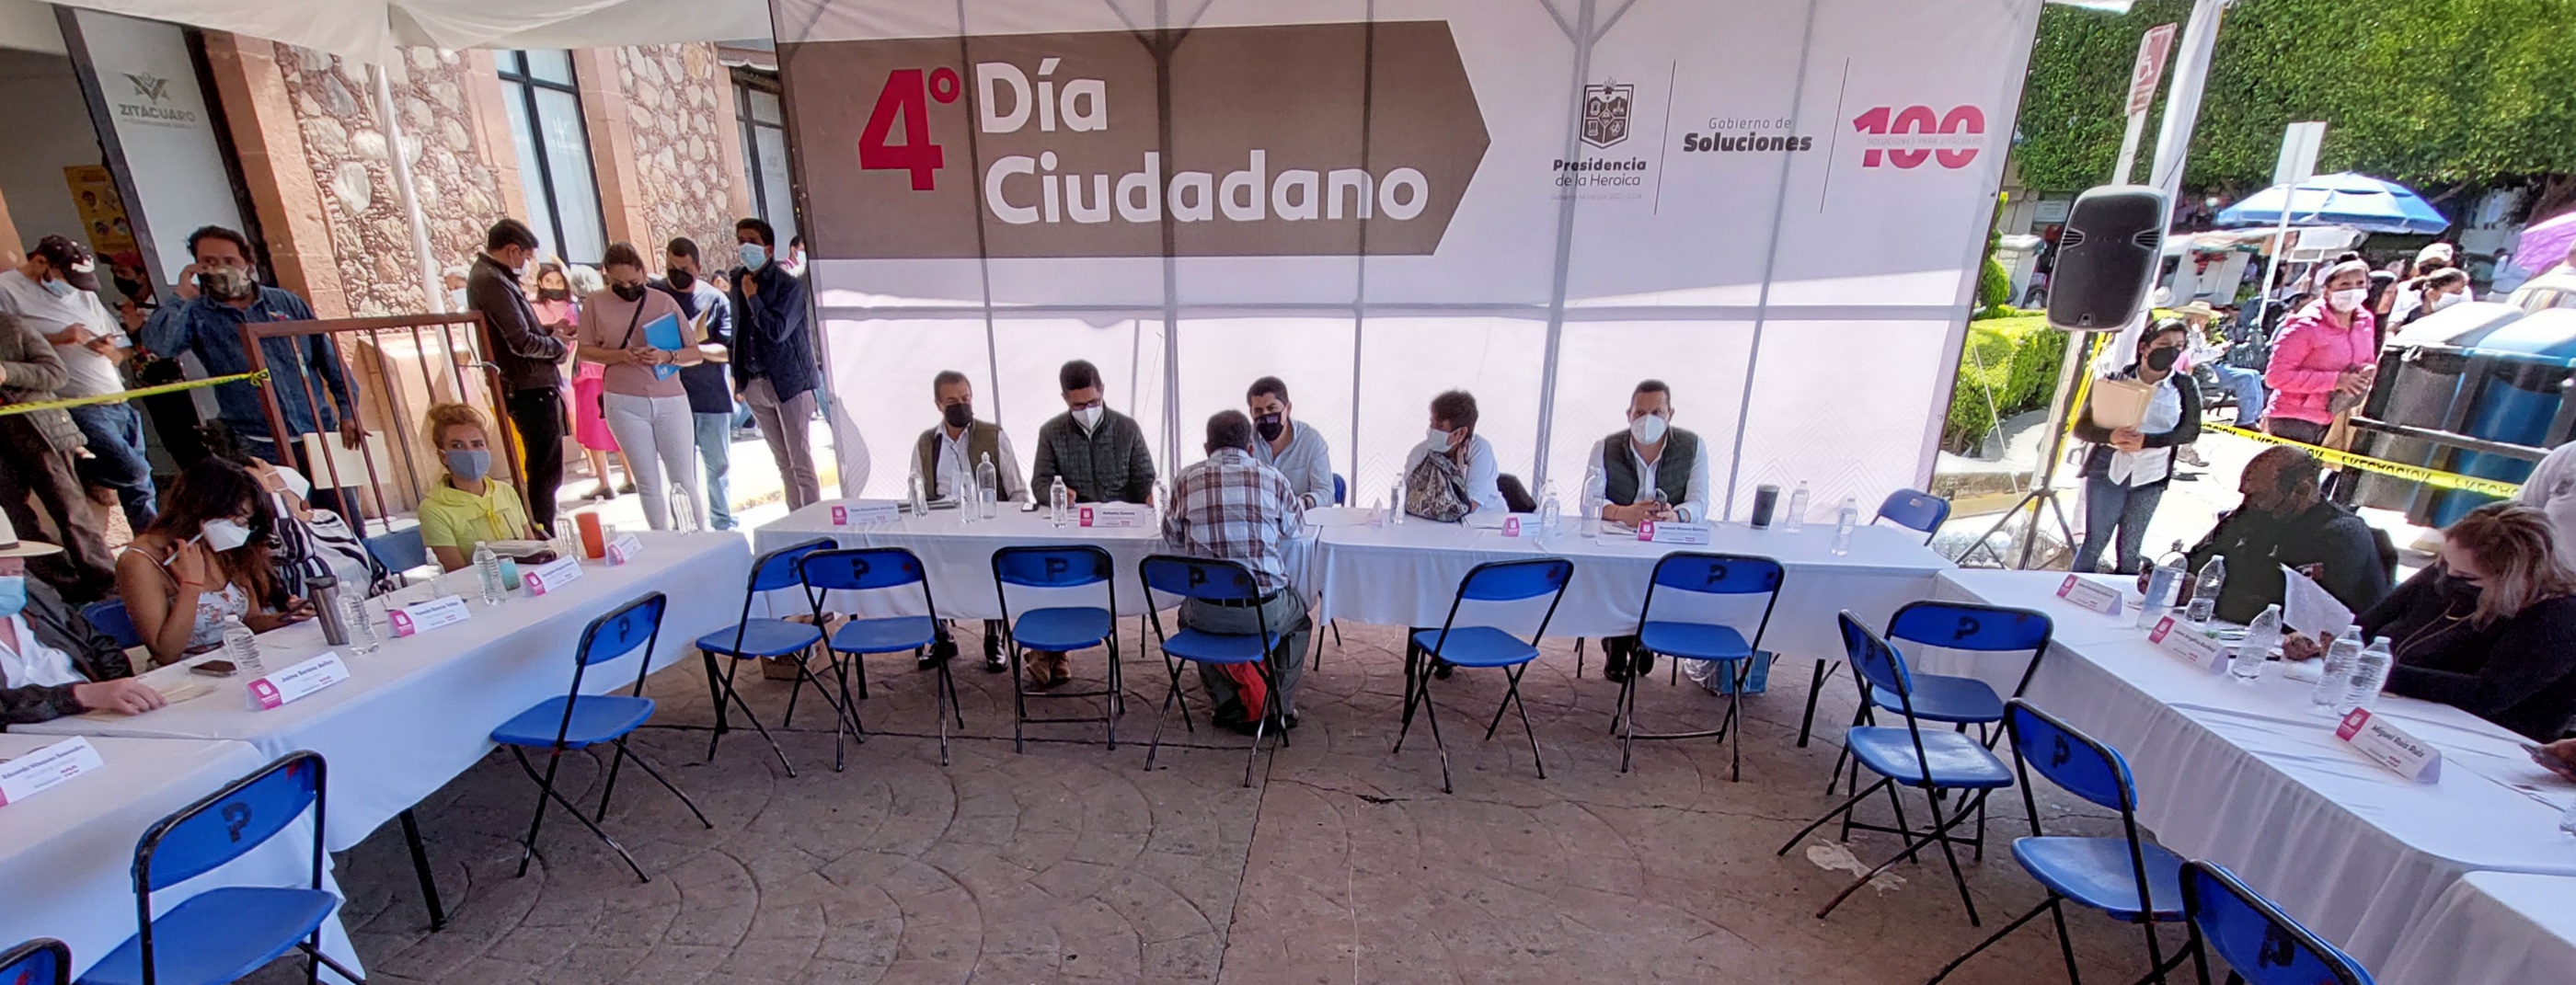 En la plaza cívica Benito Juárez se llevó a cabo el Cuarto Día Ciudadano, encabezado por el presidente municipal Juan Antonio Ixtláhuac y los secretarios de las principales áreas que conforman este #GobiernoDeSoluciones.   